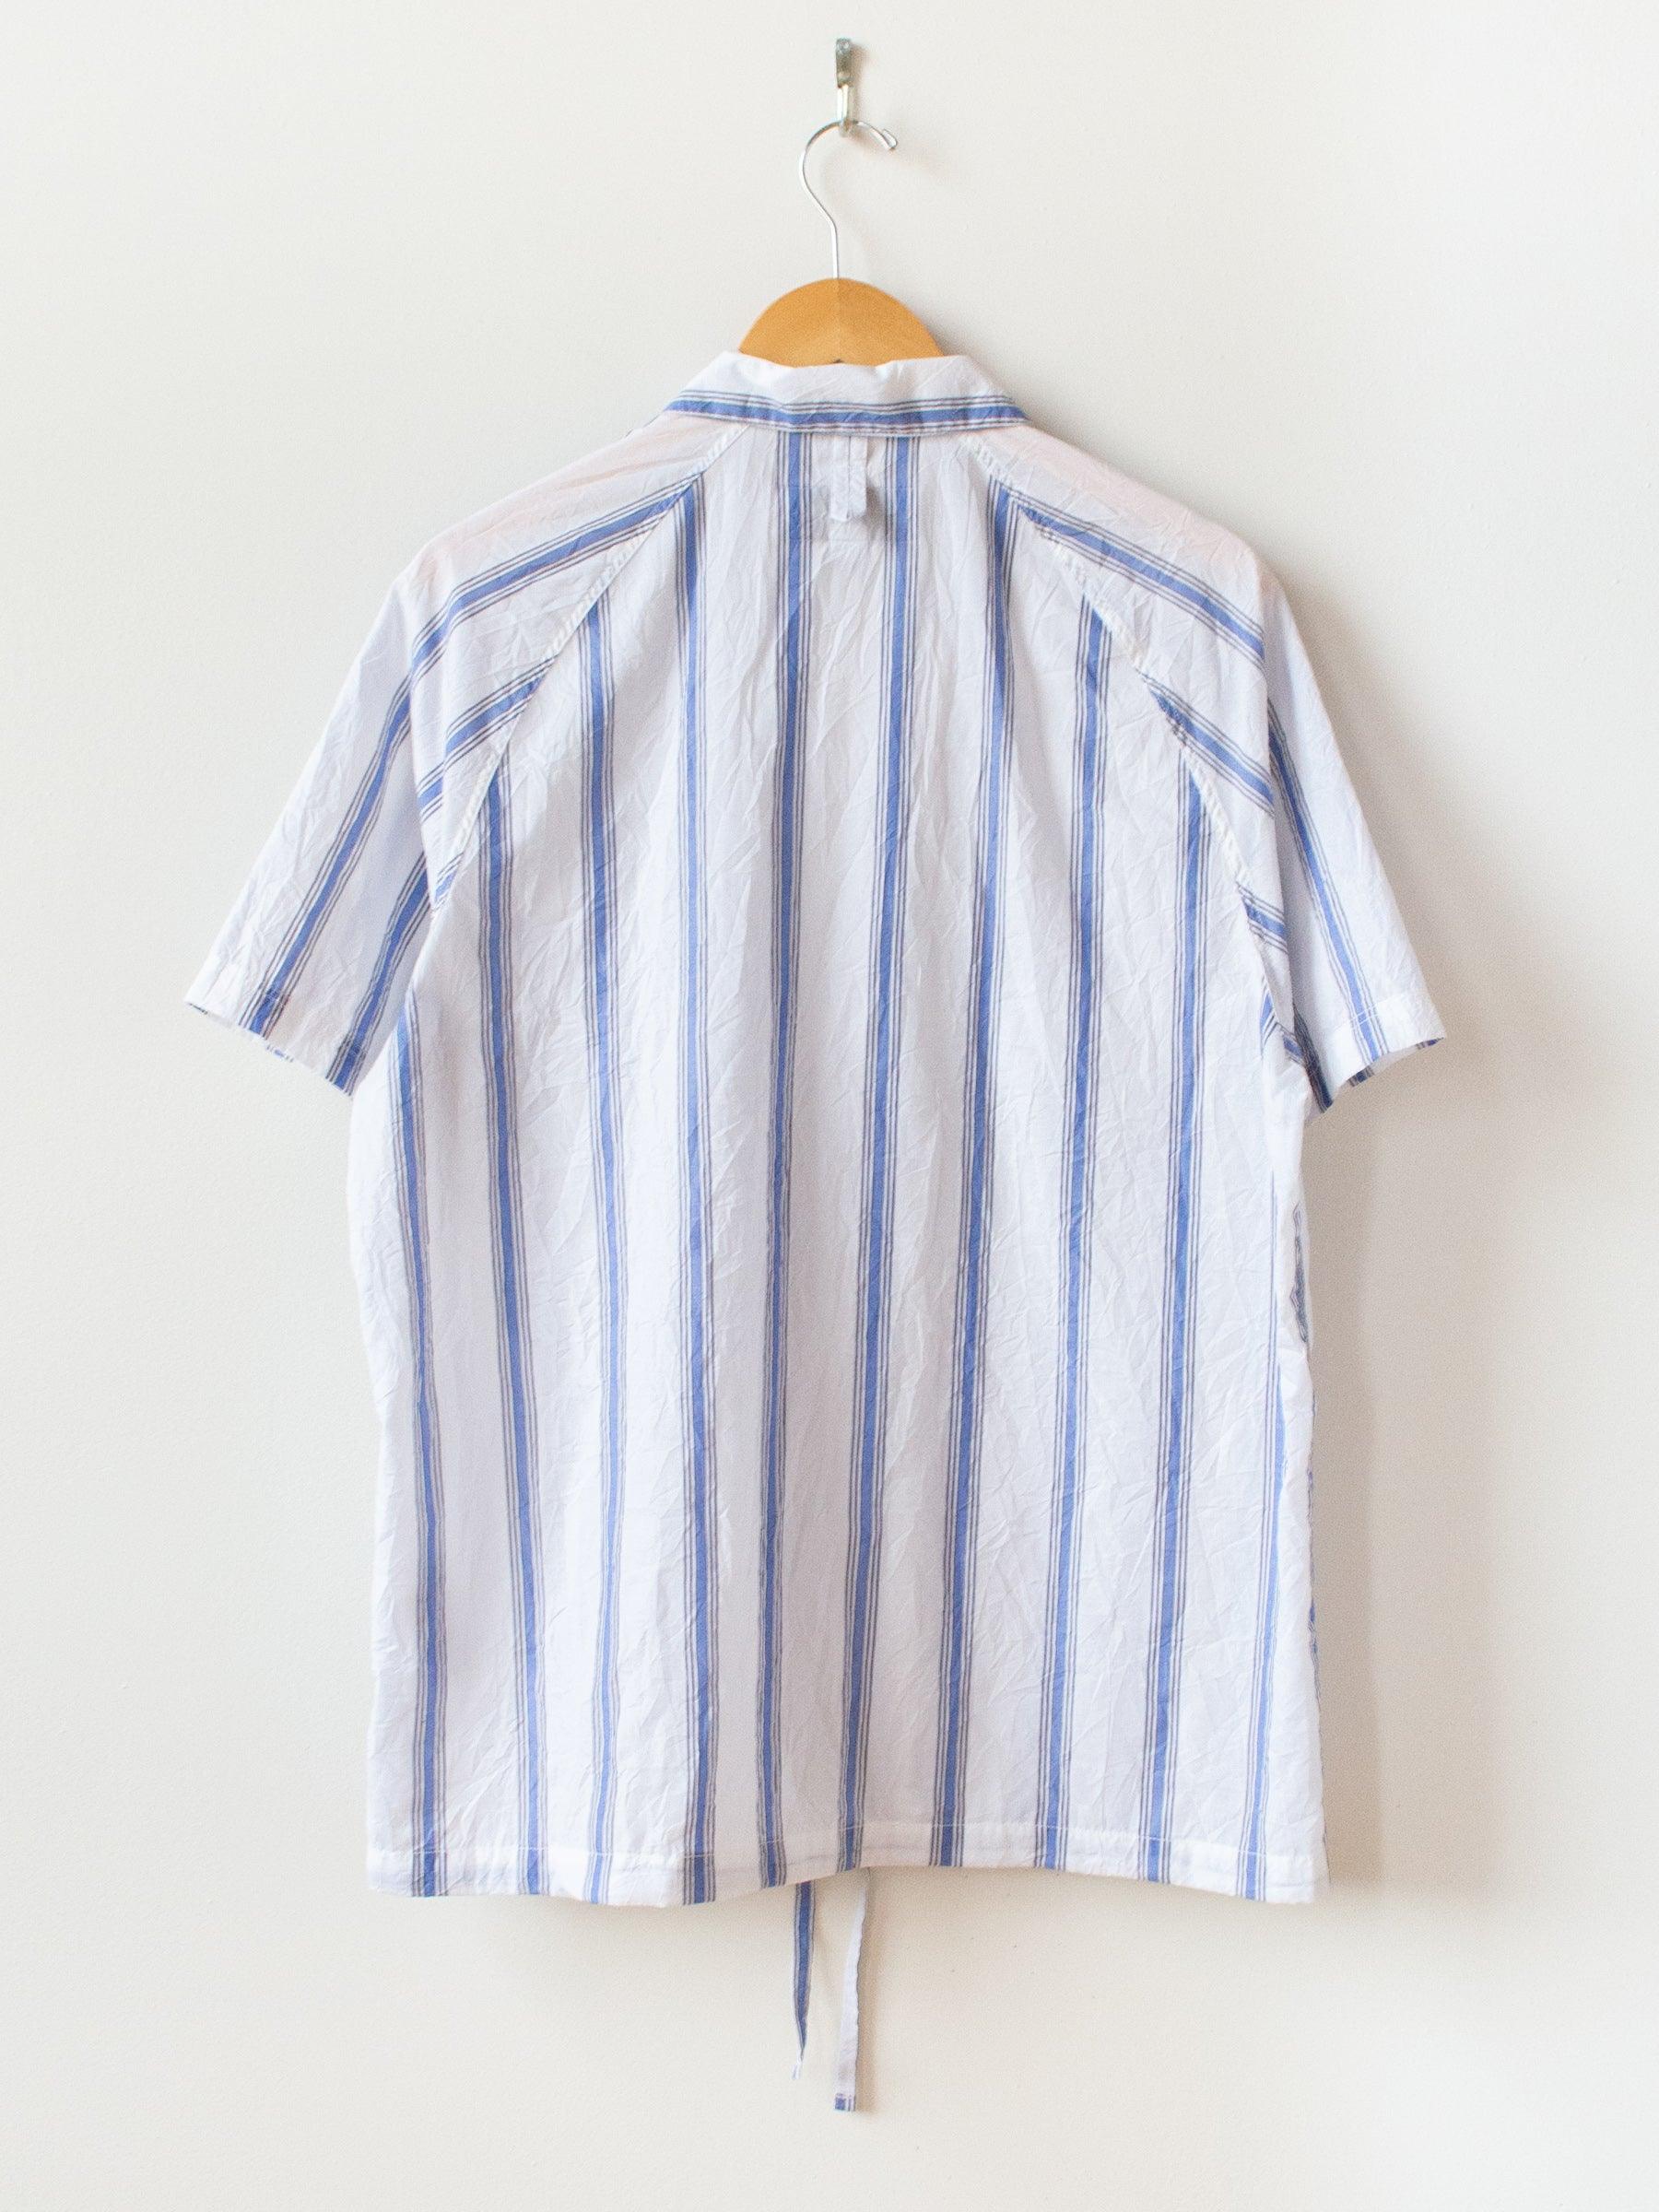 Namu Shop - Eastlogue Scout Pullover Half Shirt - Crinkle Blue Stripe